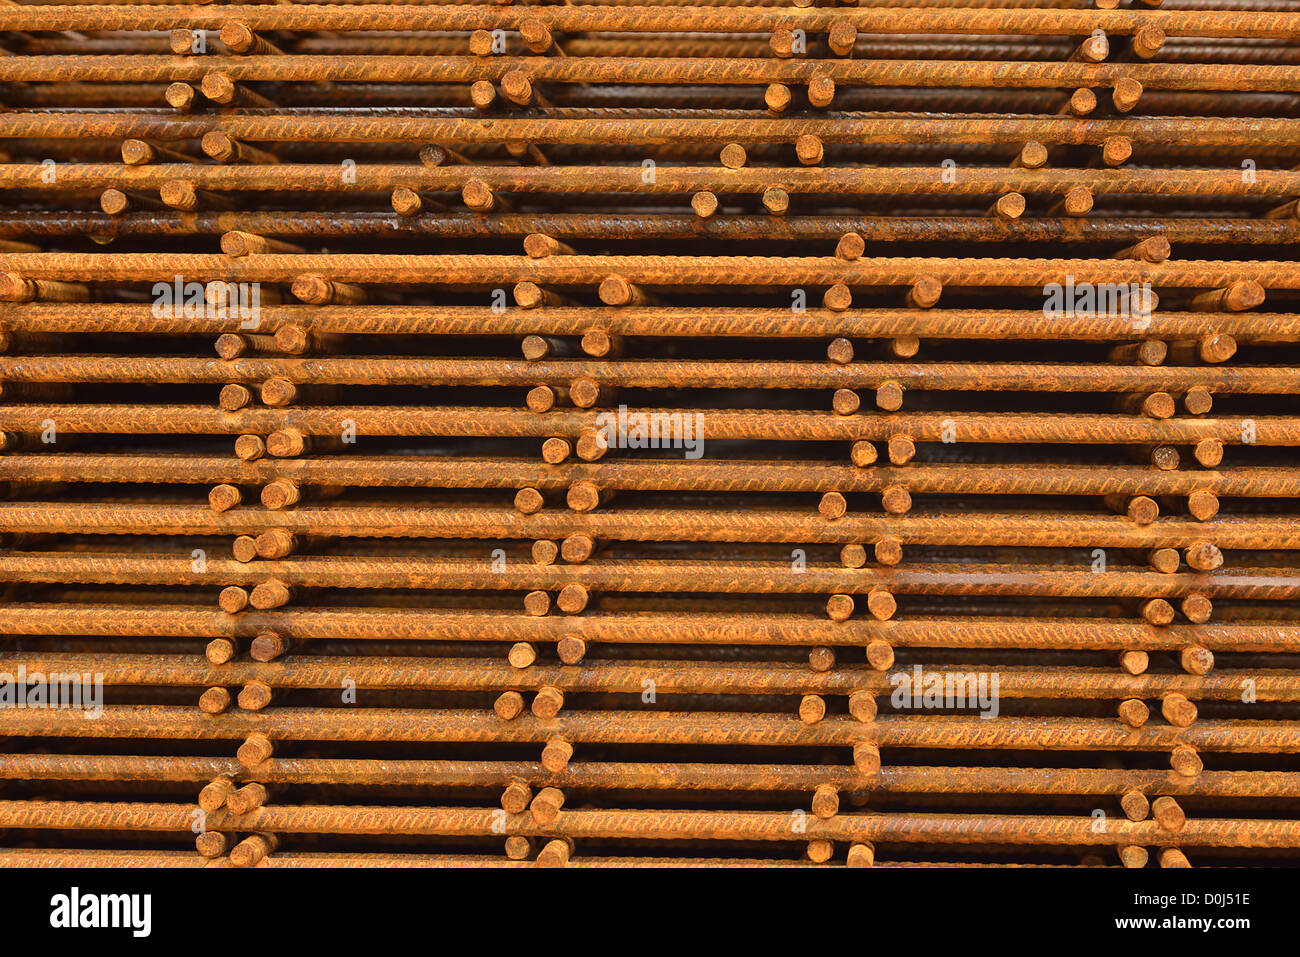 Treillis d'armature, barres d'acier pour construction empilés Banque D'Images